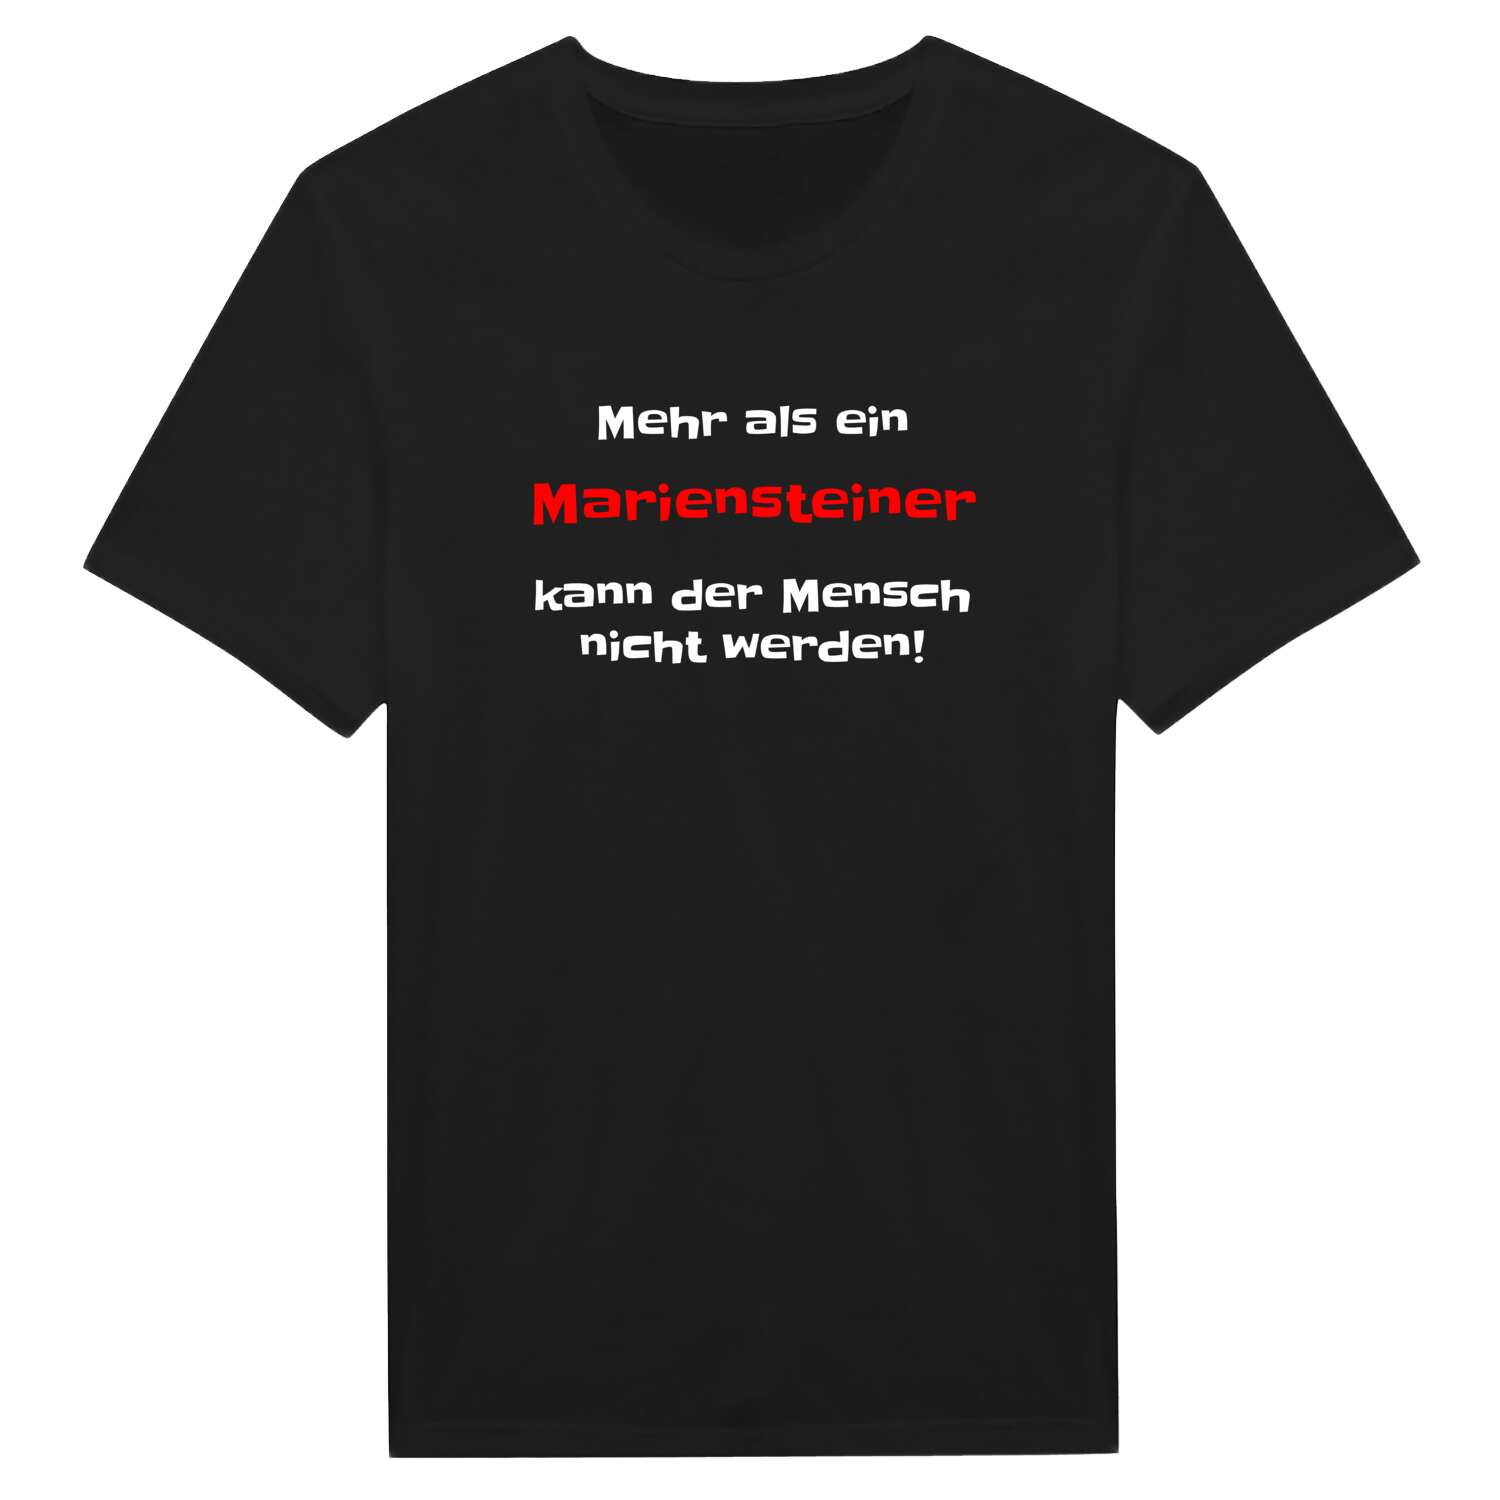 Marienstein T-Shirt »Mehr als ein«